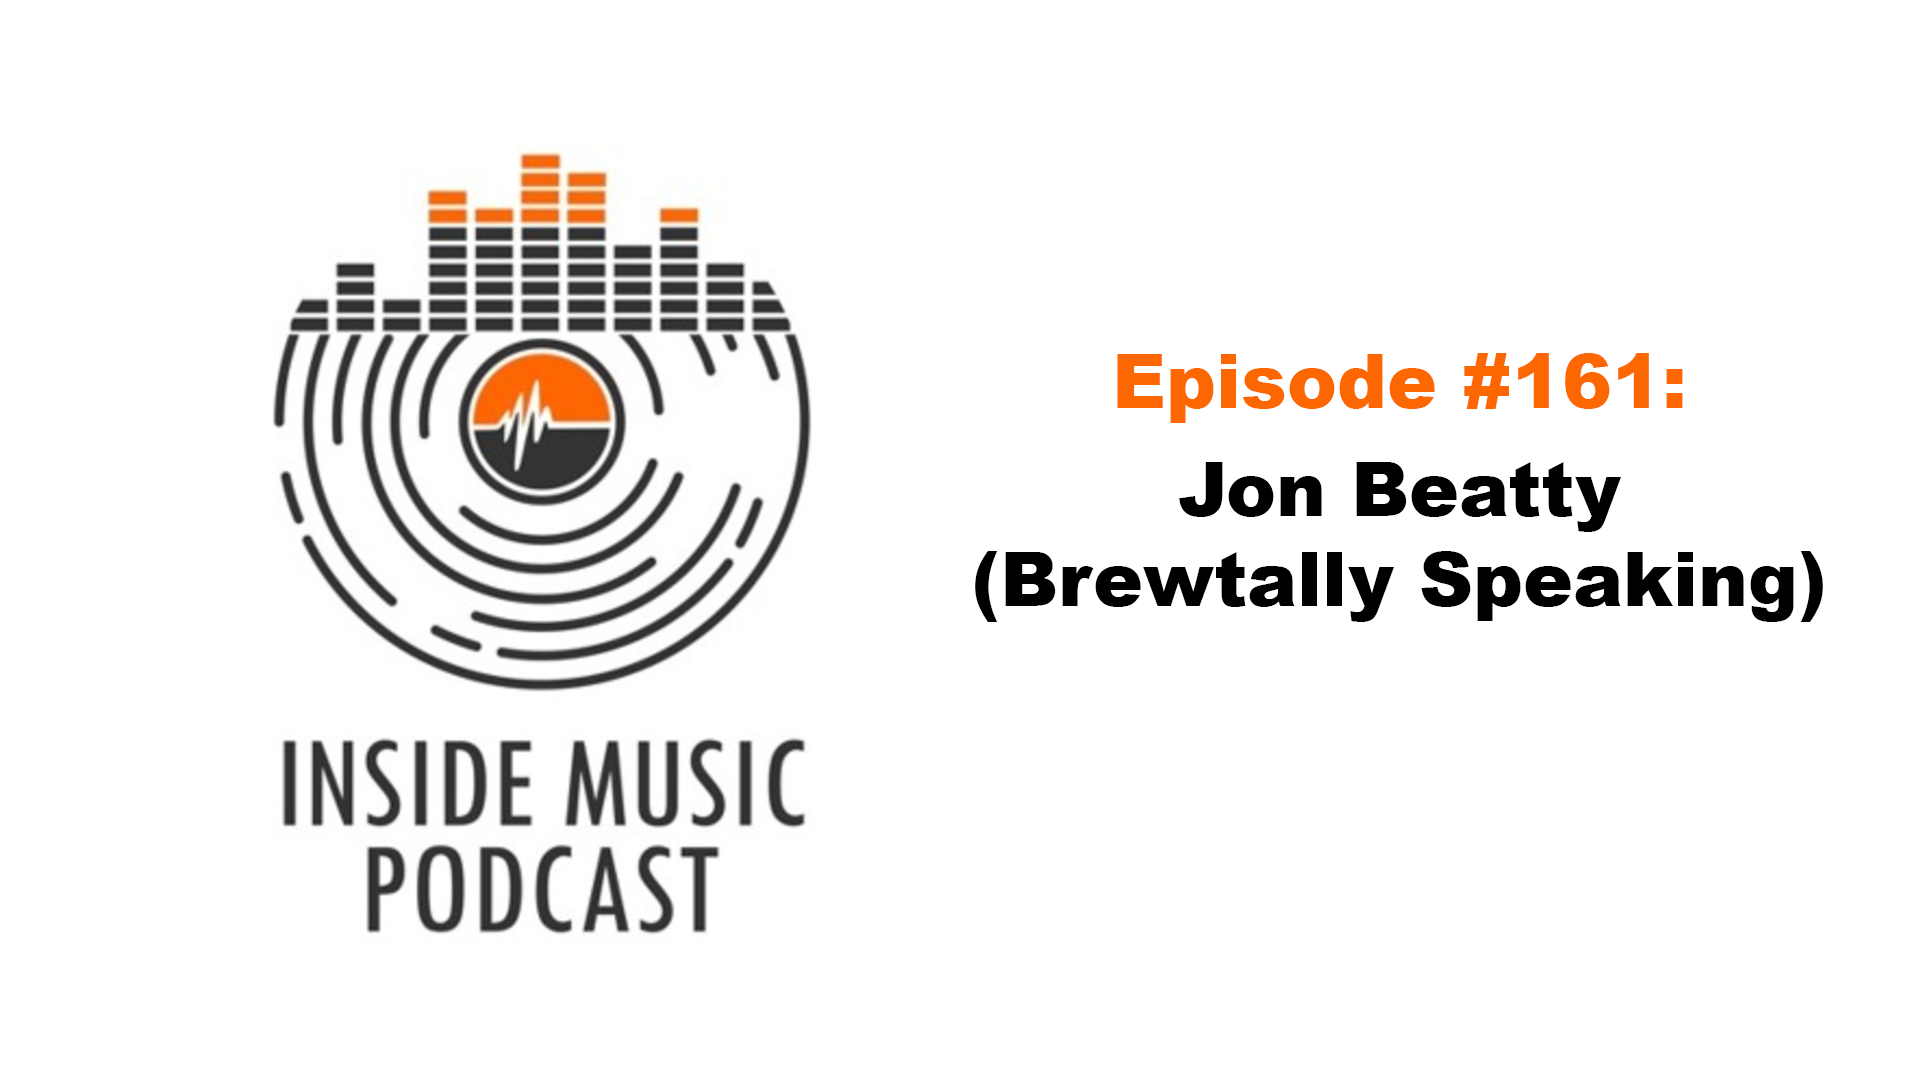 Inside Music Podcast, Inside Music, Jon Beatty, Brewtally Speaking